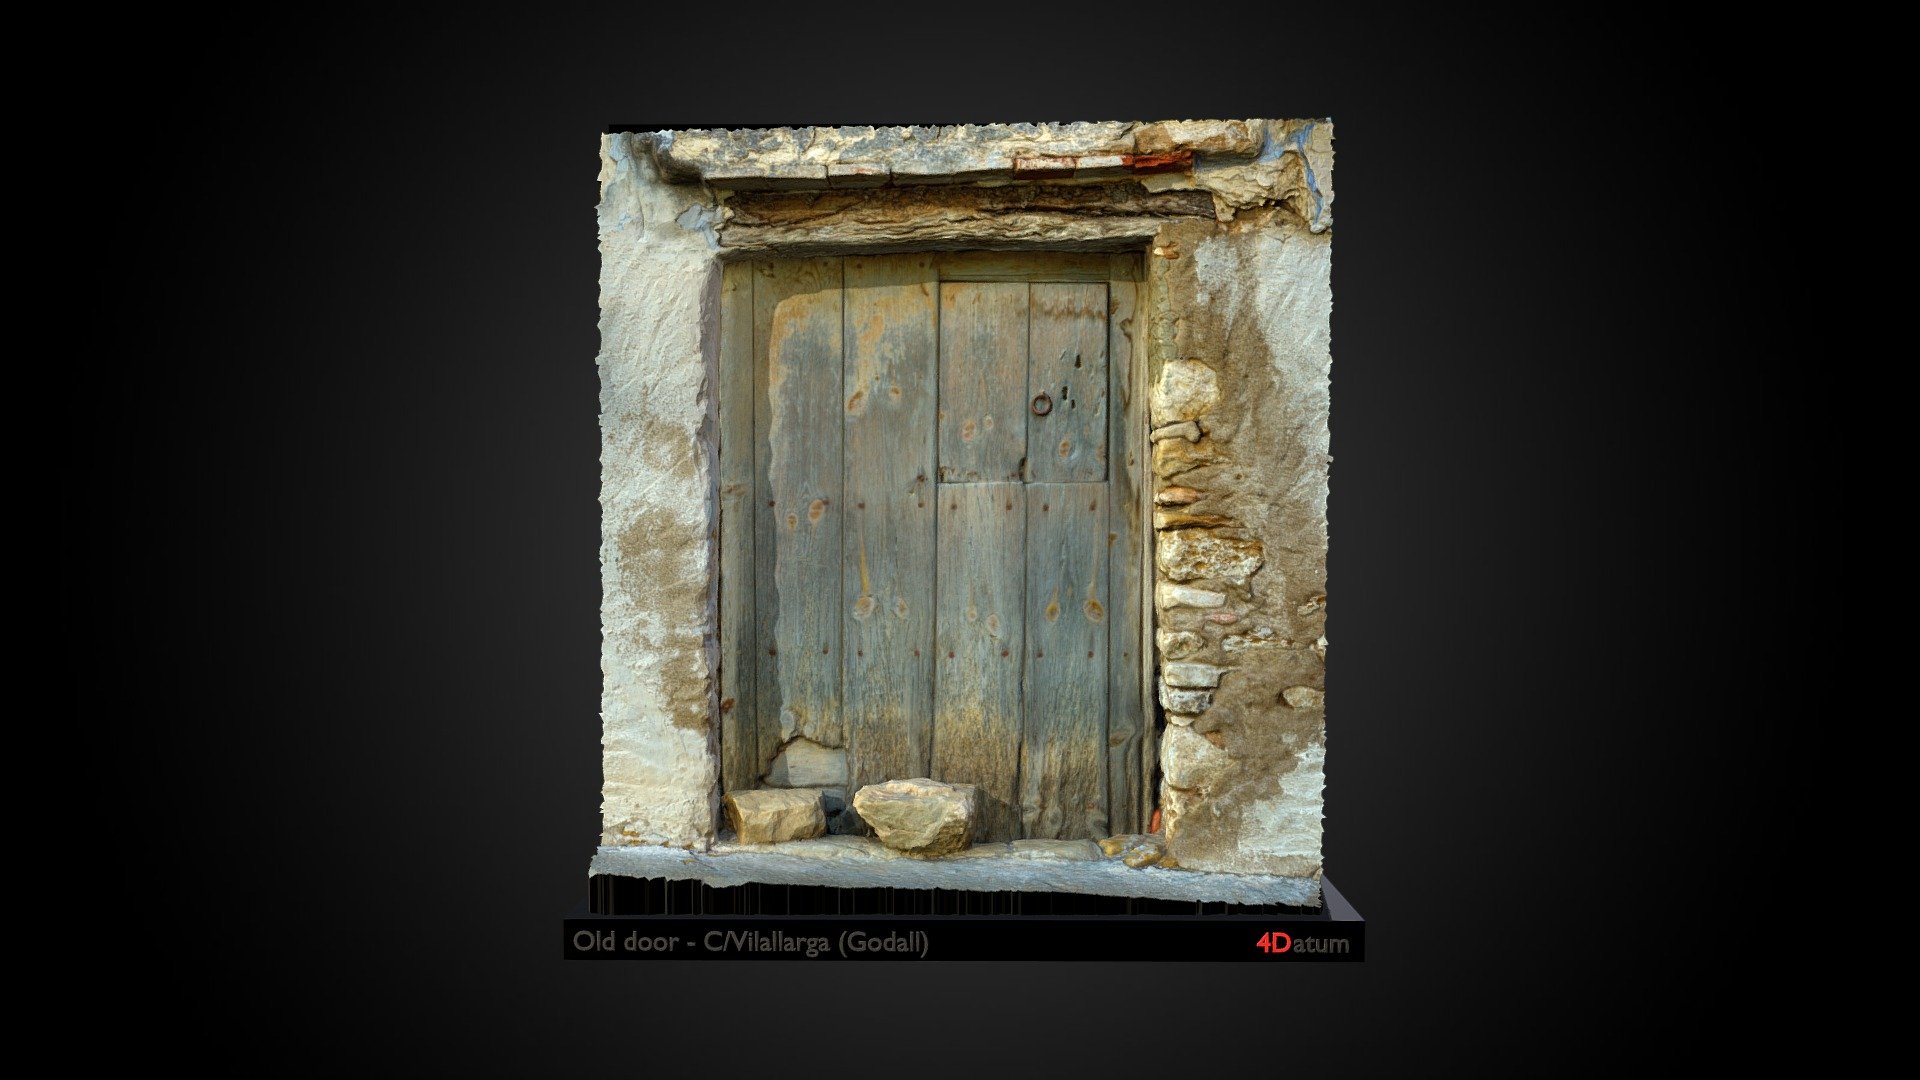 Old door - Godall